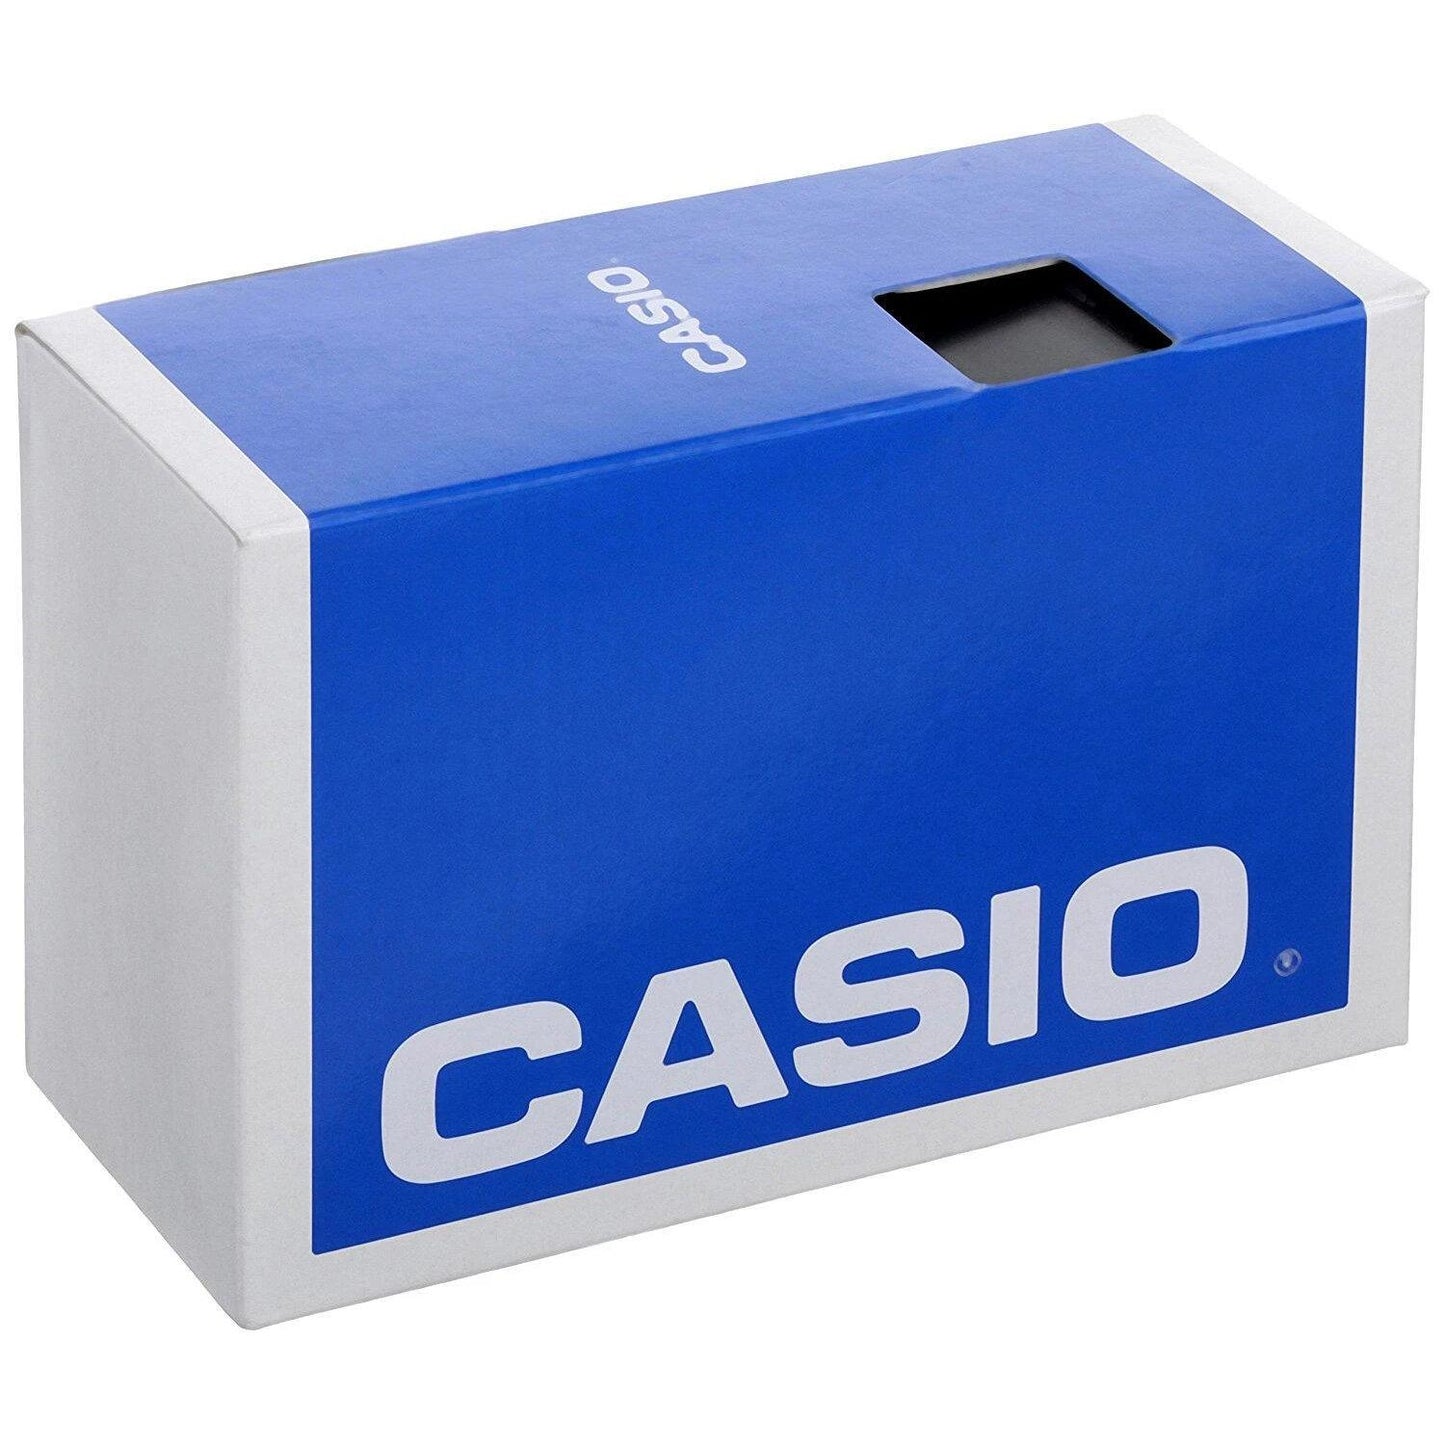 Reloj CASIO HDC-700-1AVCF Illuminator 10 Year Battery-Negro